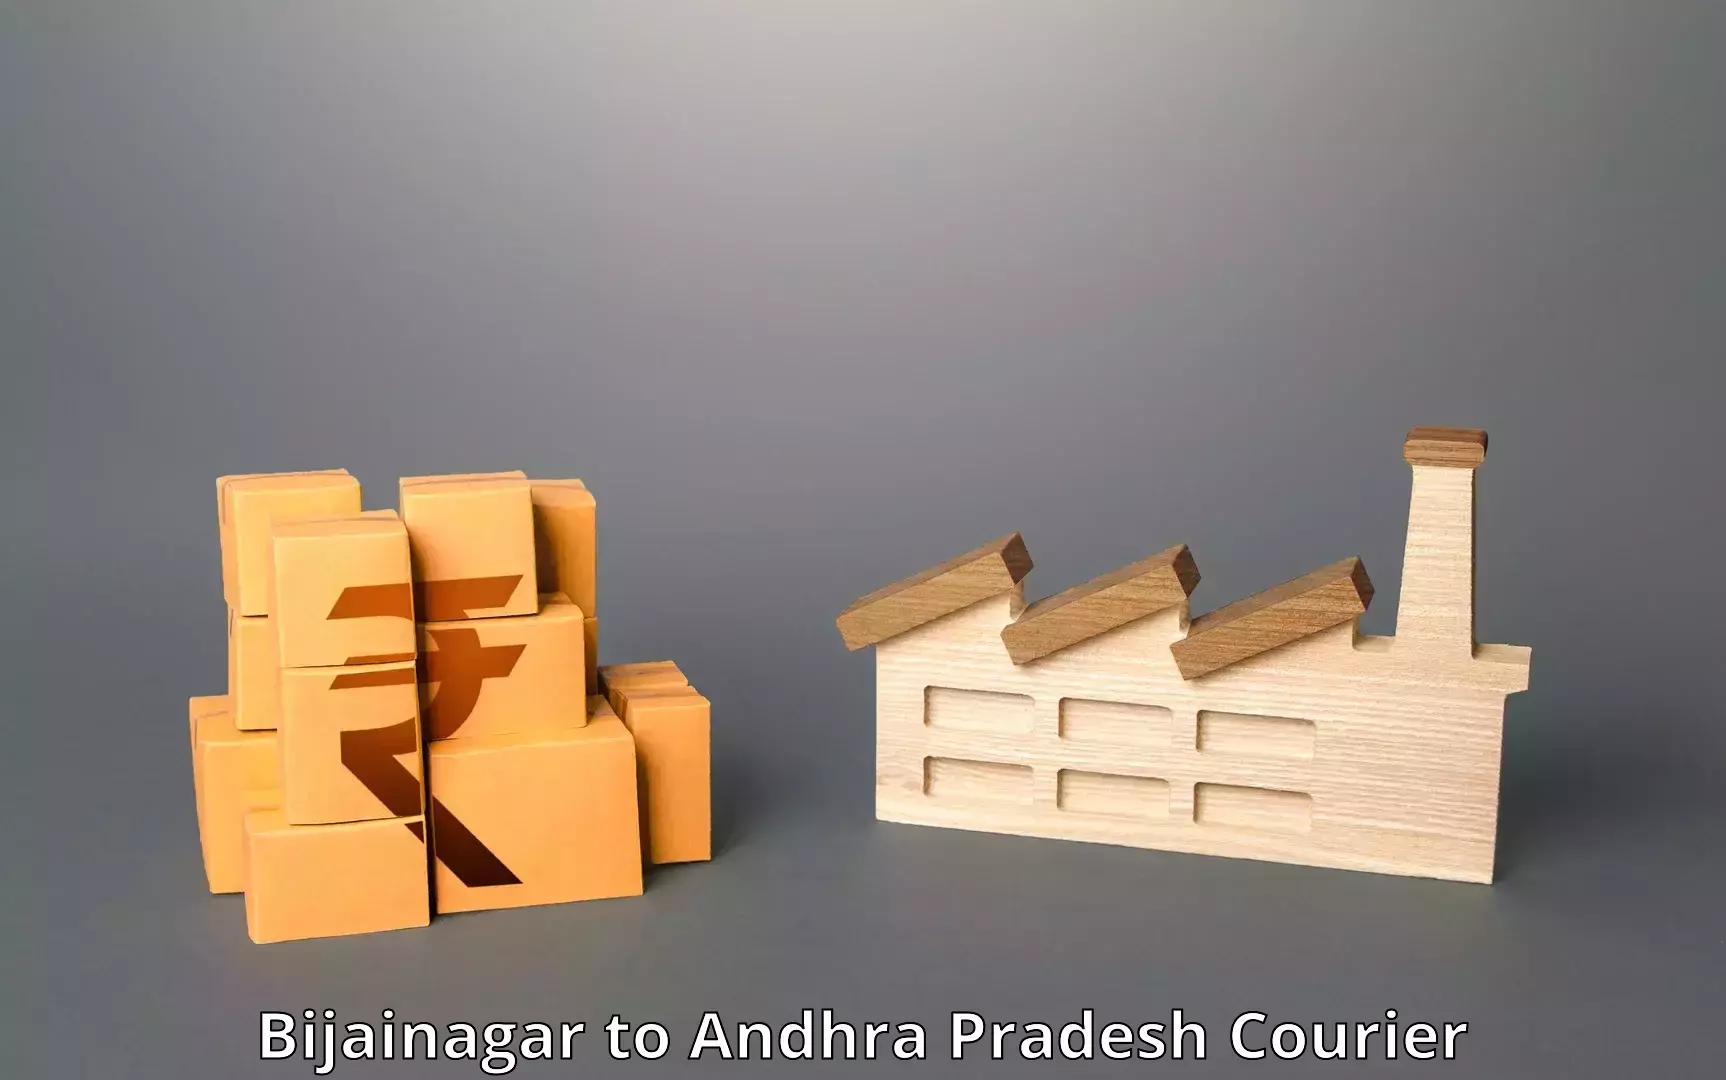 Door-to-door freight service Bijainagar to Andhra Pradesh